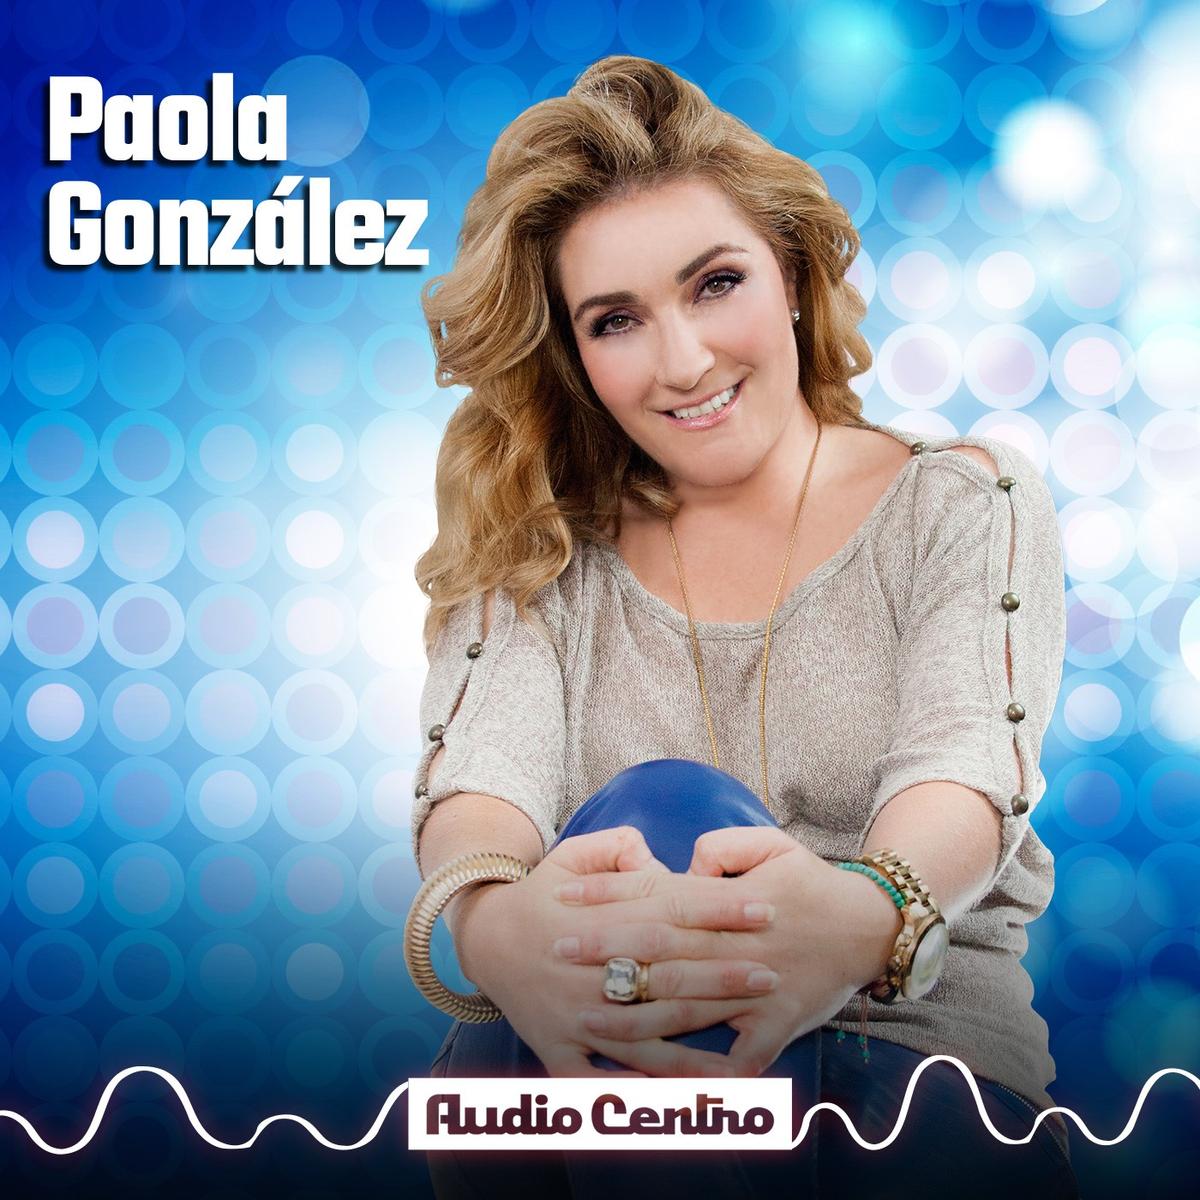 Paola González